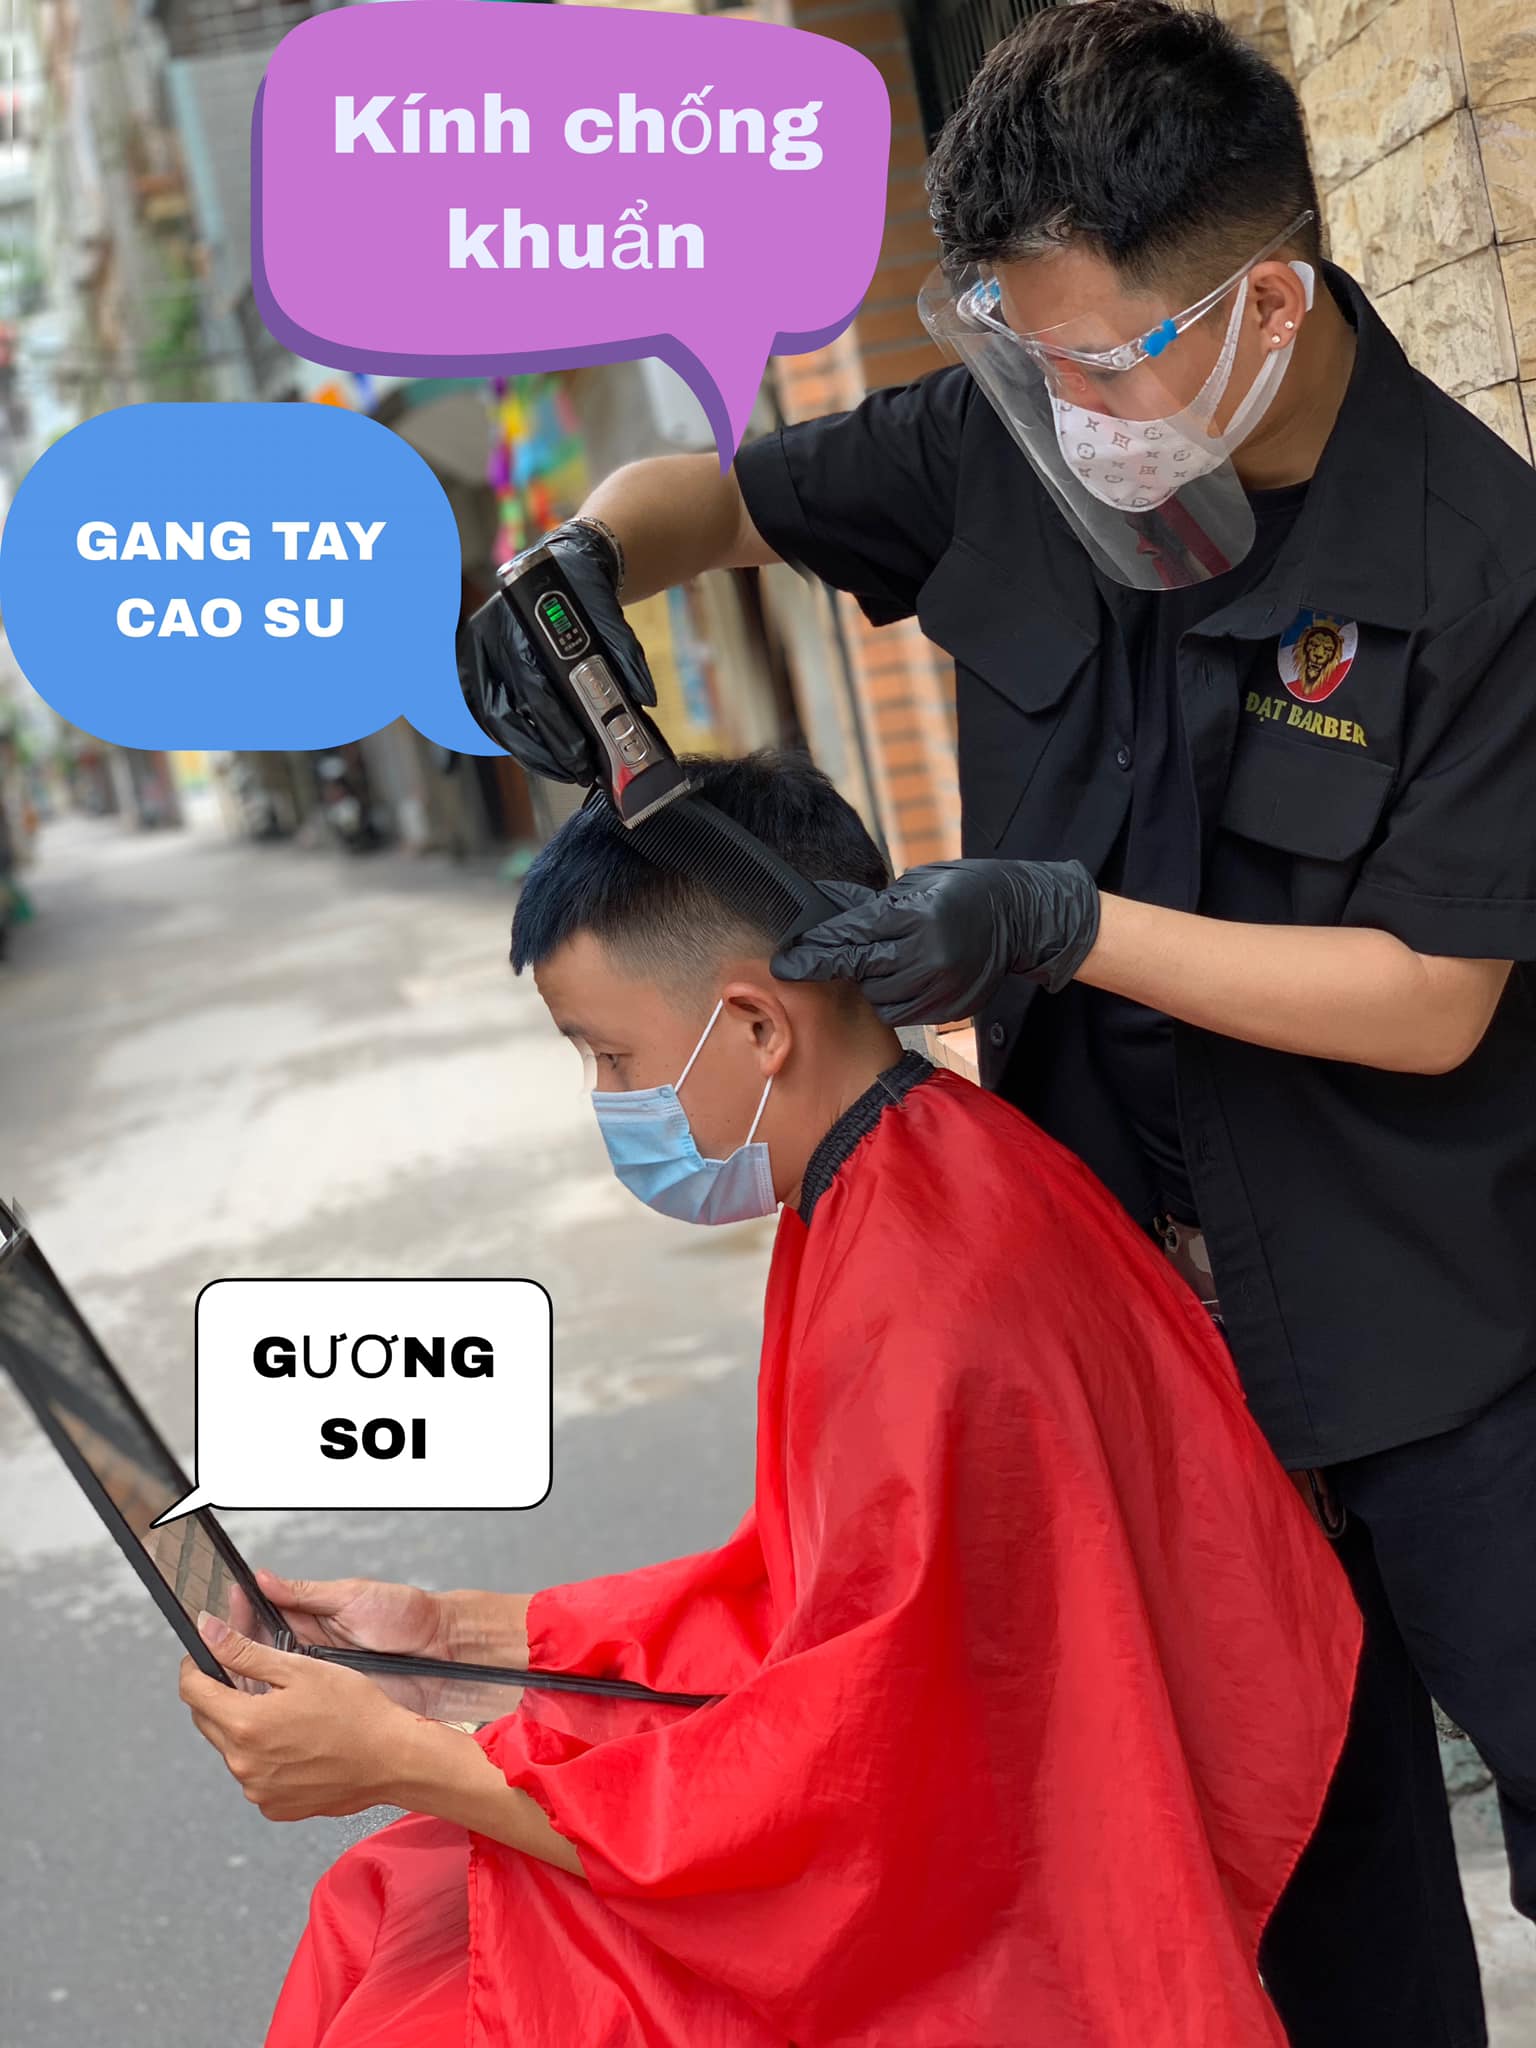 9 Địa chỉ cắt tóc ngắn đẹp nhất Lào Cai - Chia Sẻ Kinh Nghiệm Du Lịch Việt  Nam Và Du Lịch Thế Giới